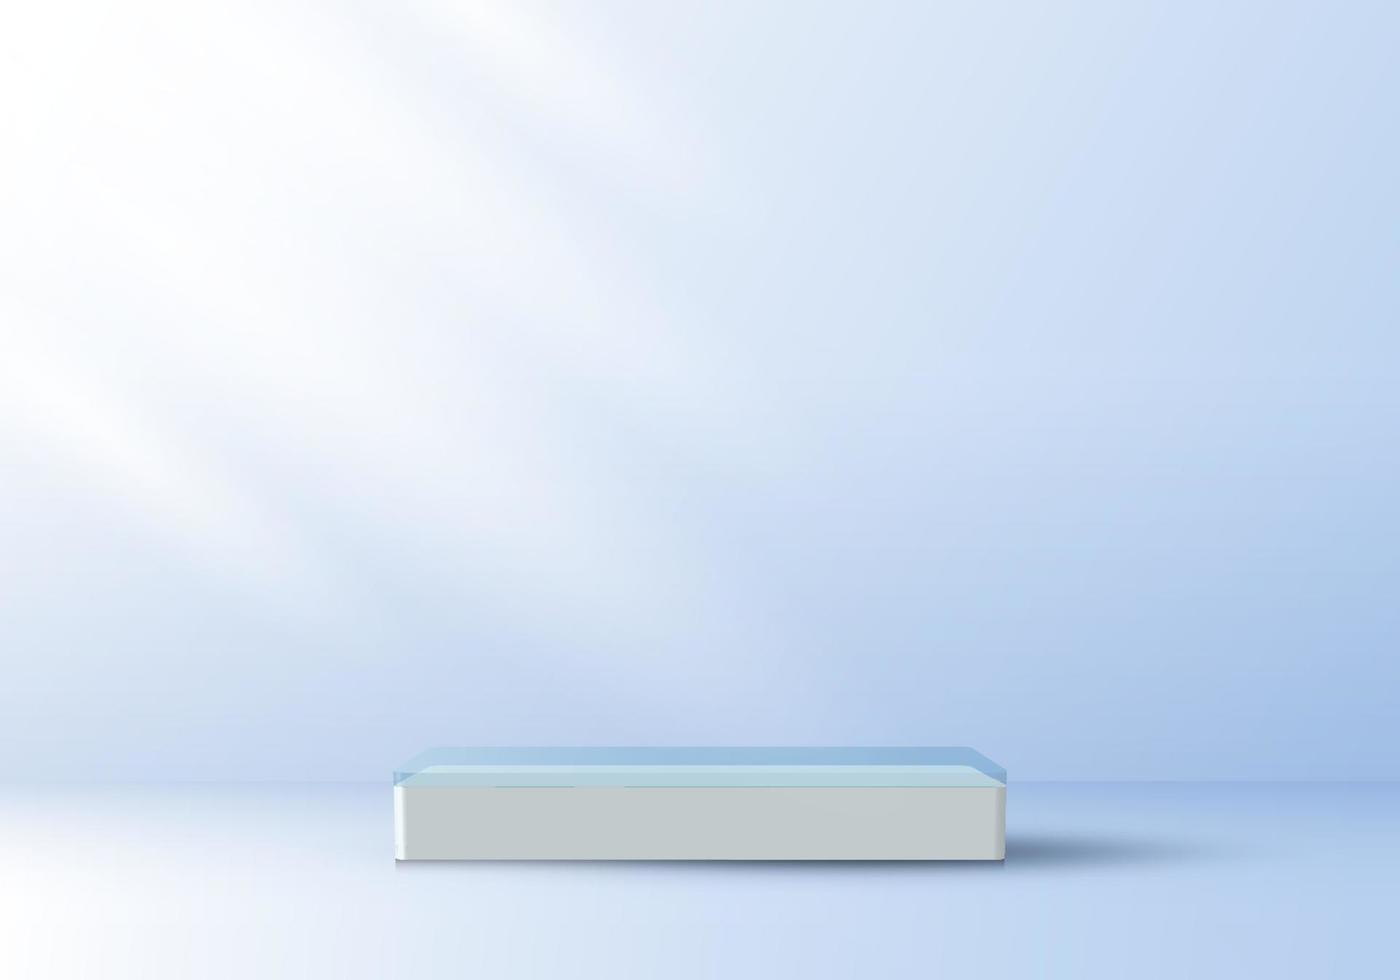 3D-realistisch elegant display wit voetstuk podium bovenop transparantie op zachte blauwe kleur studio kamer achtergrond vector